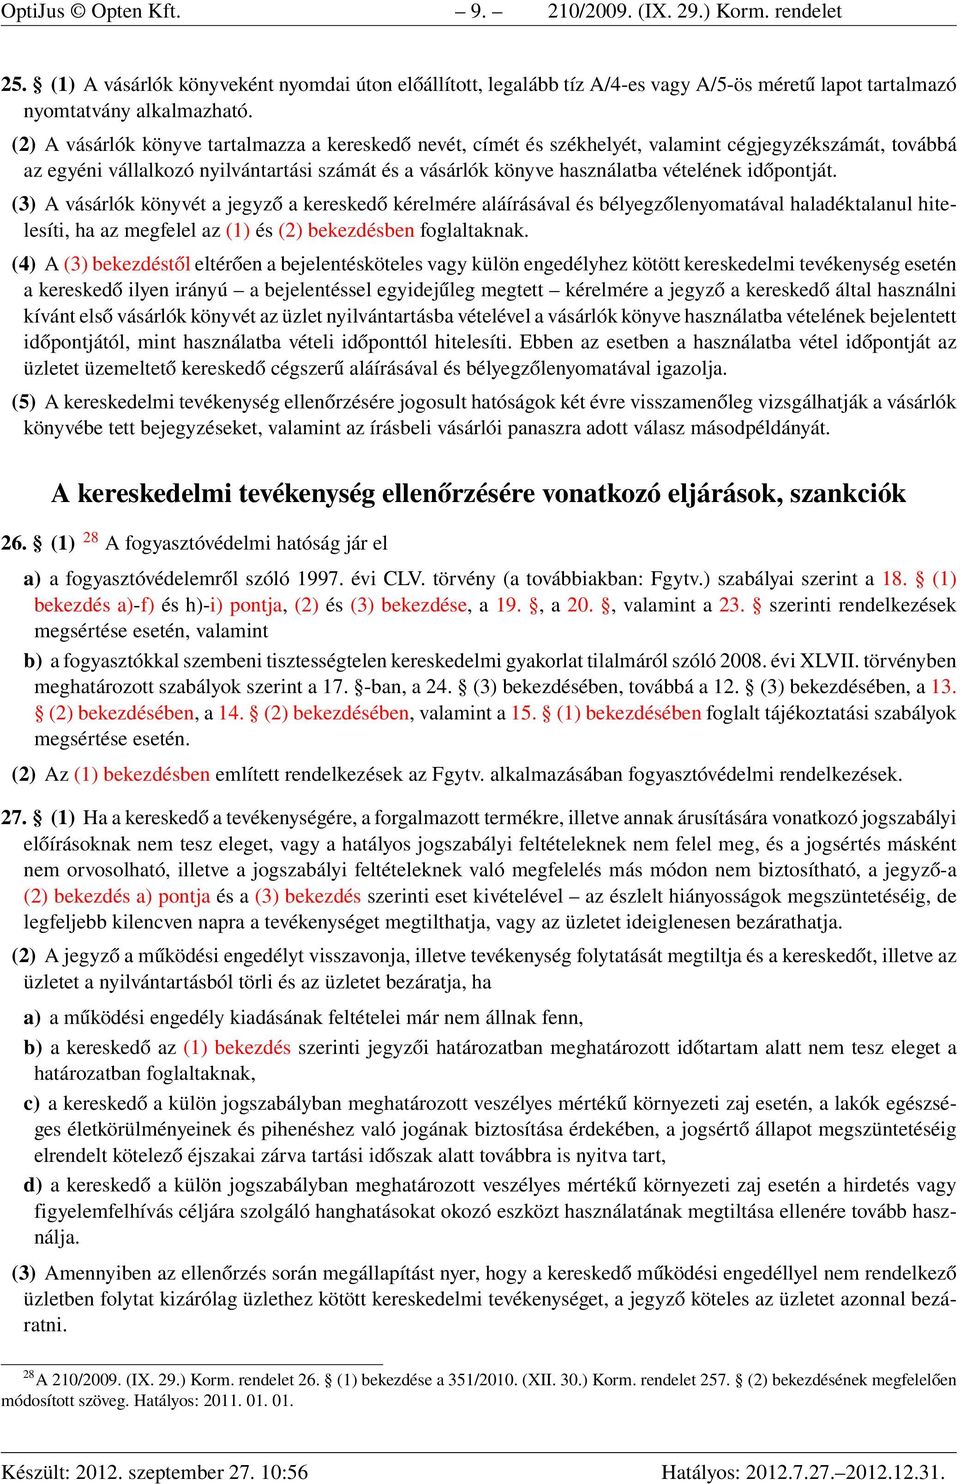 210/2009. (IX. 29.) Korm. rendelet a kereskedelmi tevékenységek végzésének  feltételeiről - PDF Free Download